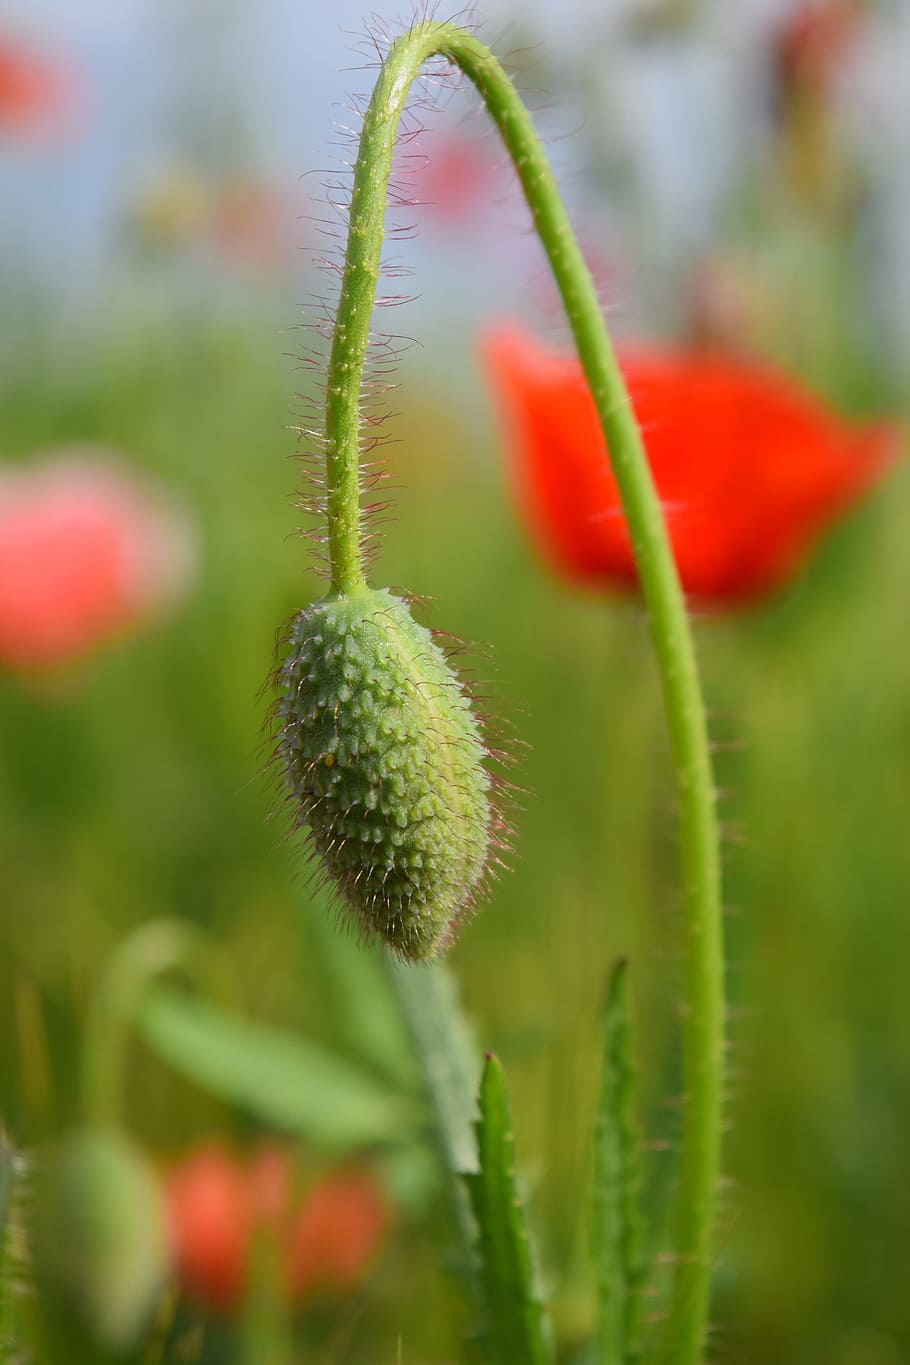 Poppy, klatschmohn, red, field of poppies, nature, bud, meadow, growth, plant, flower